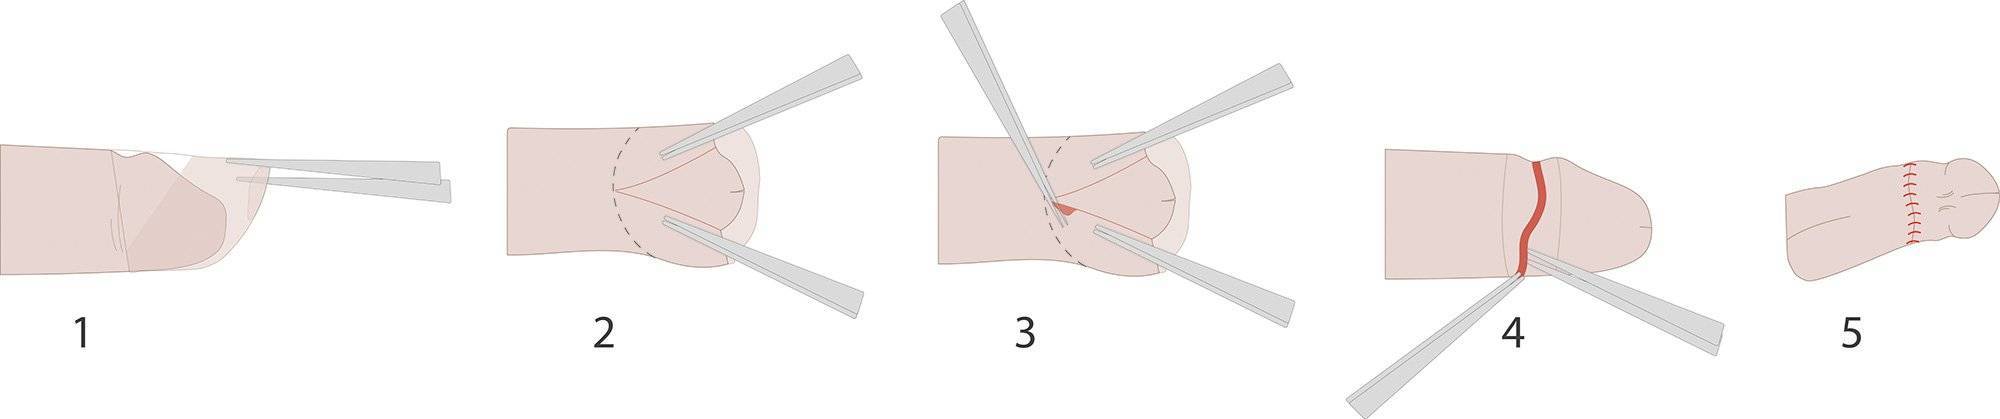 Обрезание крайней плоти у мужчин (циркумцизия) в санкт-петербурге: подробно о процедуре и способах обрезания - неомед (812)249-0-249